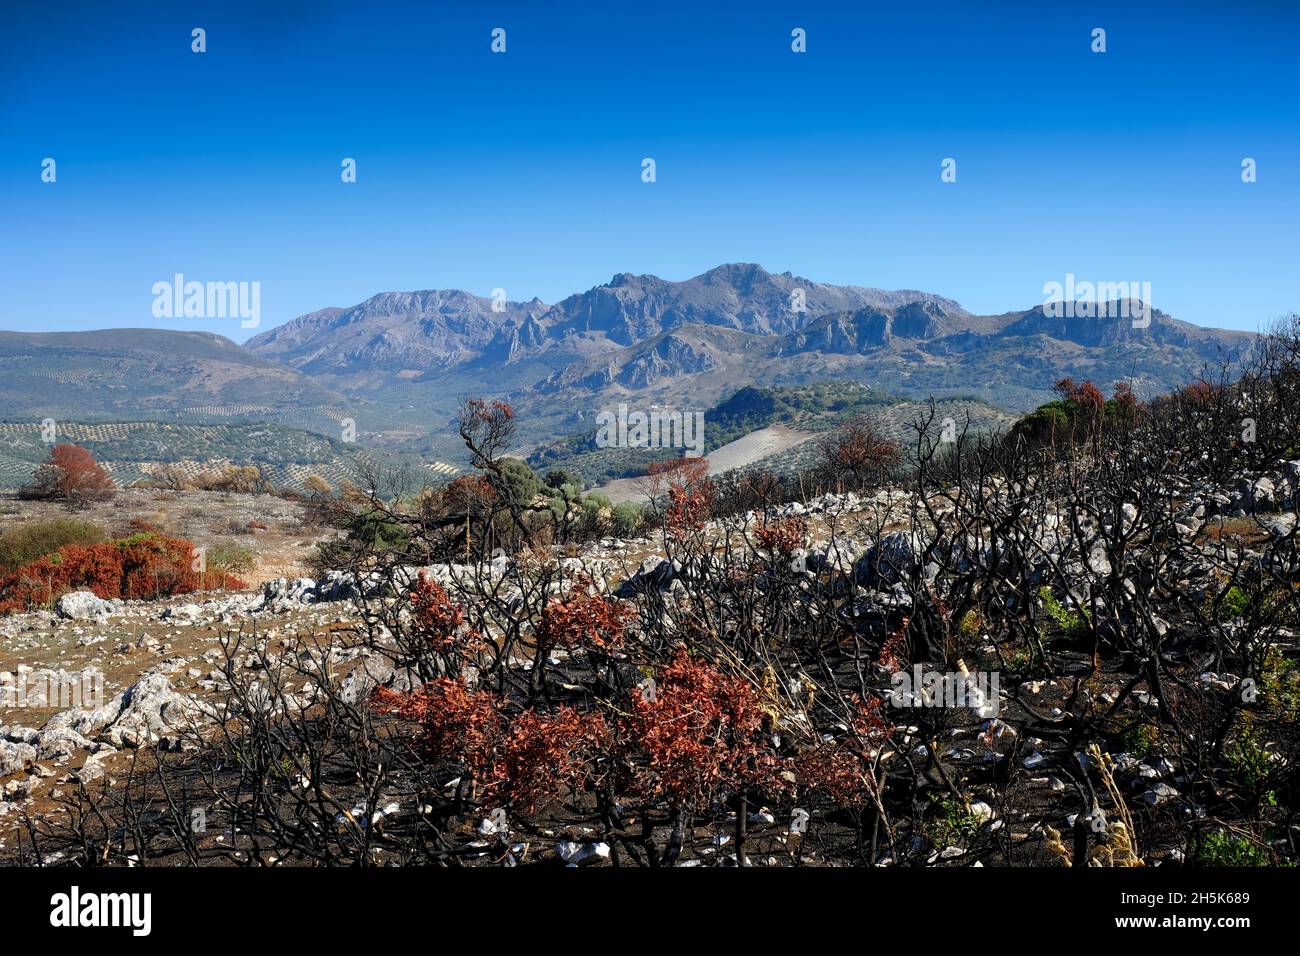 Paisaje de árboles y plantas quemados y aislados después de un incendio forestal en la región de Algar del Parque Natural de Sierras Subbéticas, Andalucía, España Foto de stock